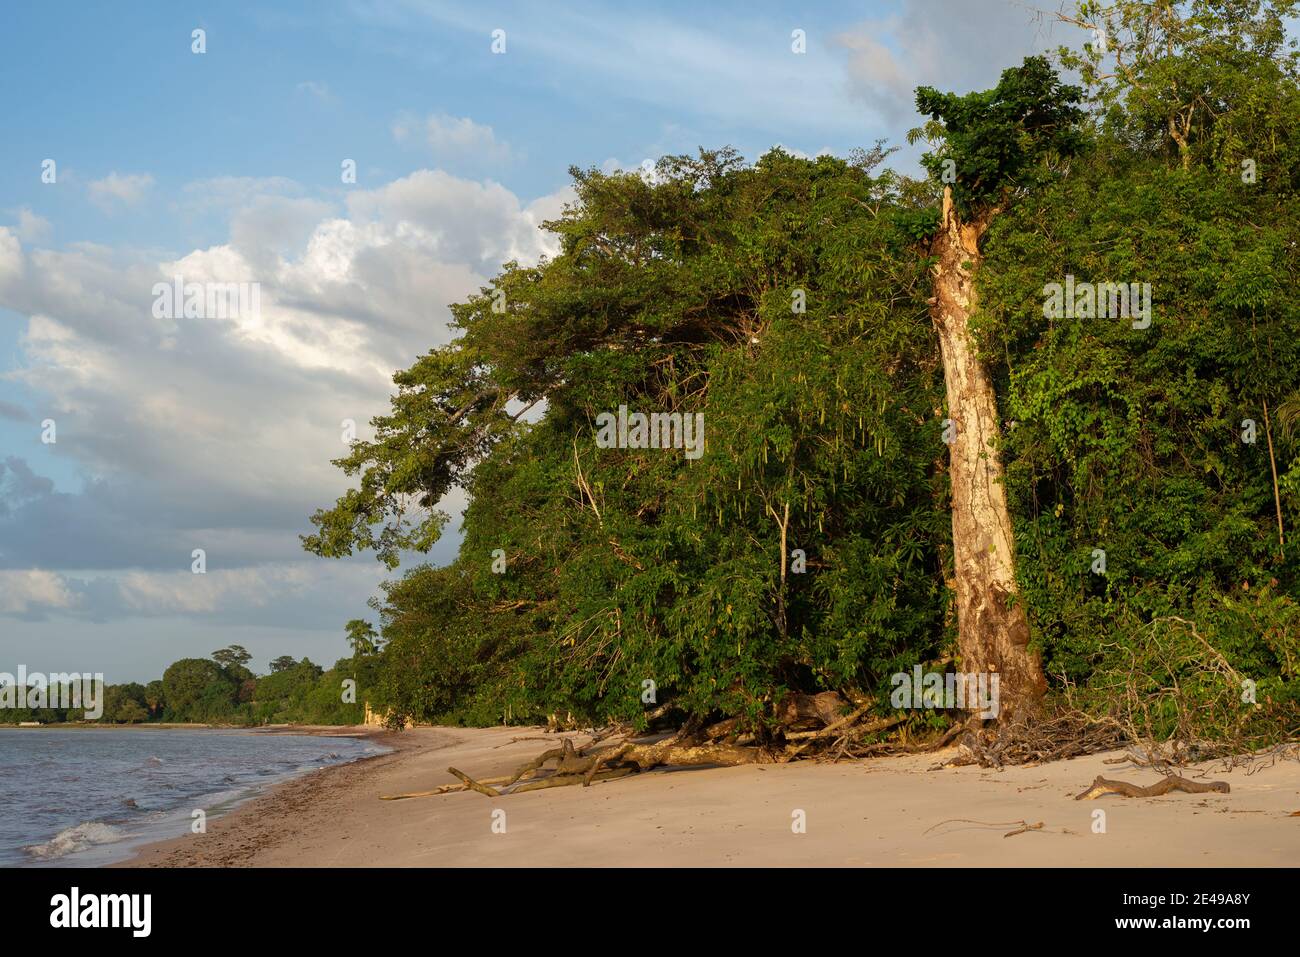 Blick auf einen großen Baumstamm, der steht bleibt, nachdem seine Äste auf den Strandsand fallen. Itupanema Amazonas Strand, Barcarena, Pará Staat, Brasilien. Stockfoto